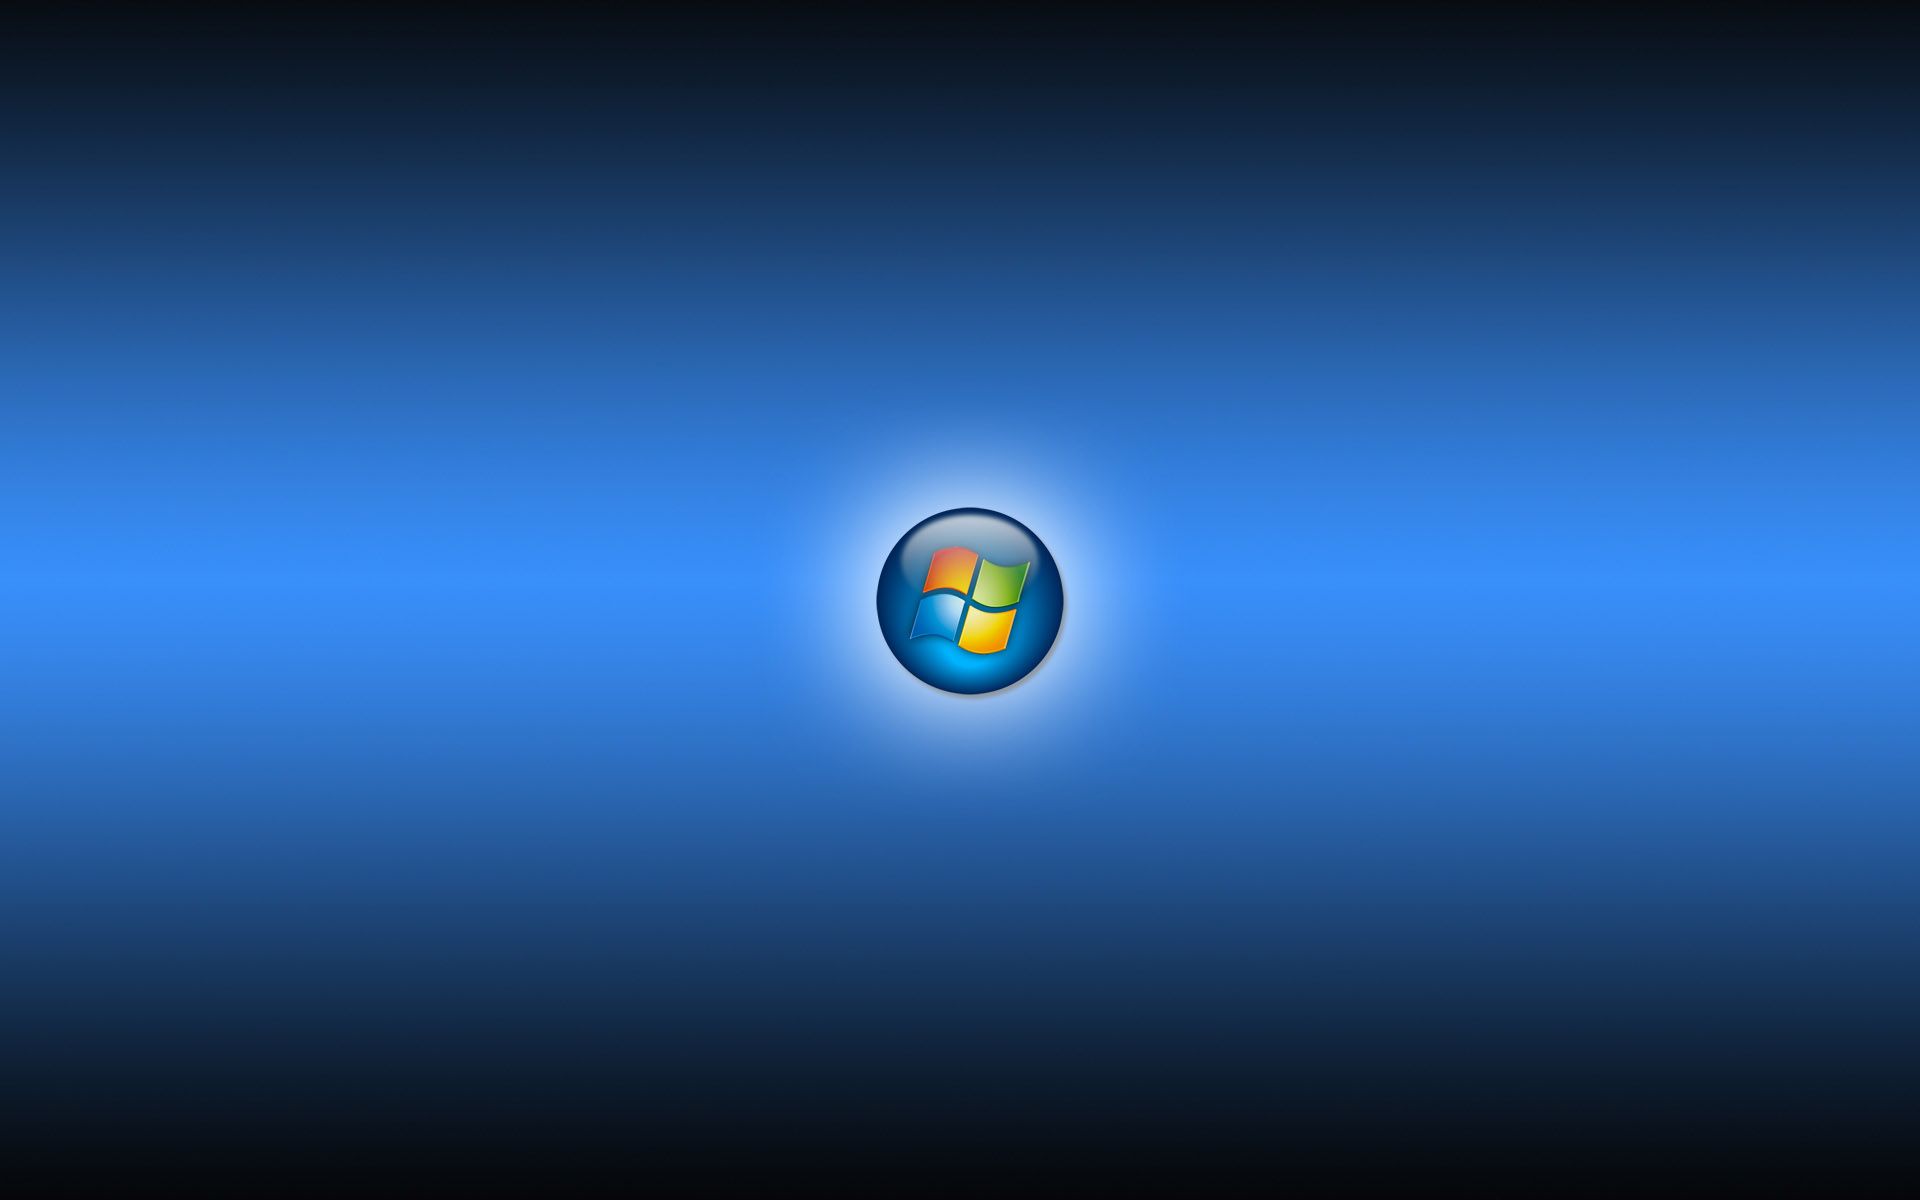 Windows Vista Blue Logo Wallpaper In Resolutions